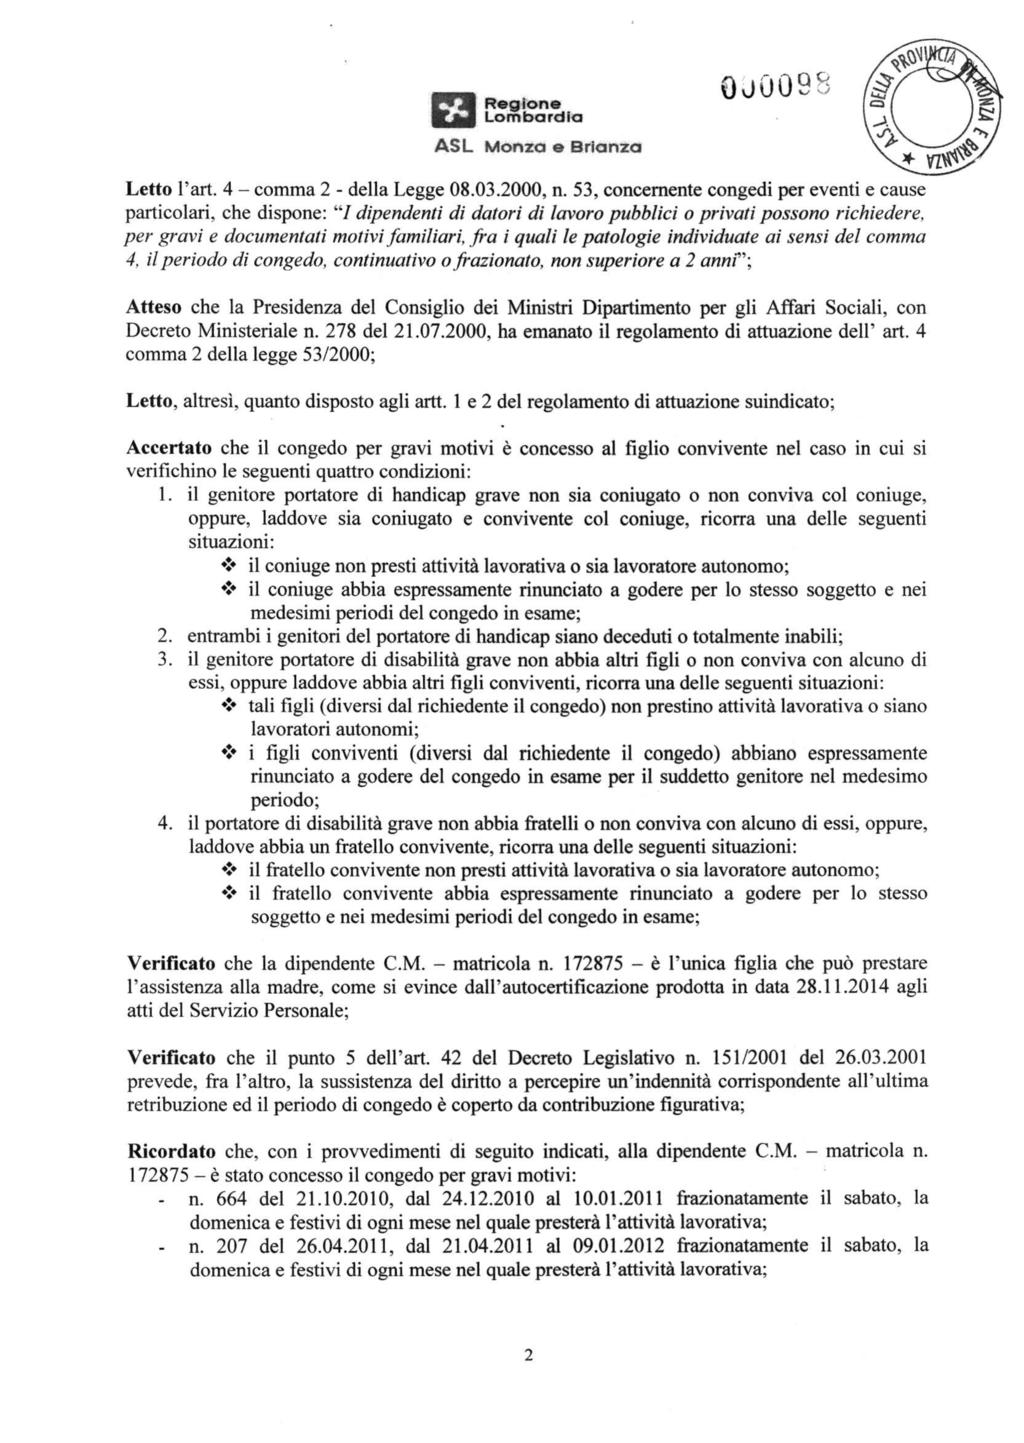 ASL Monza e Brianza 0JÓ09S Letto l'art. 4 - comma 2 - della Legge 08.03.2000, n.